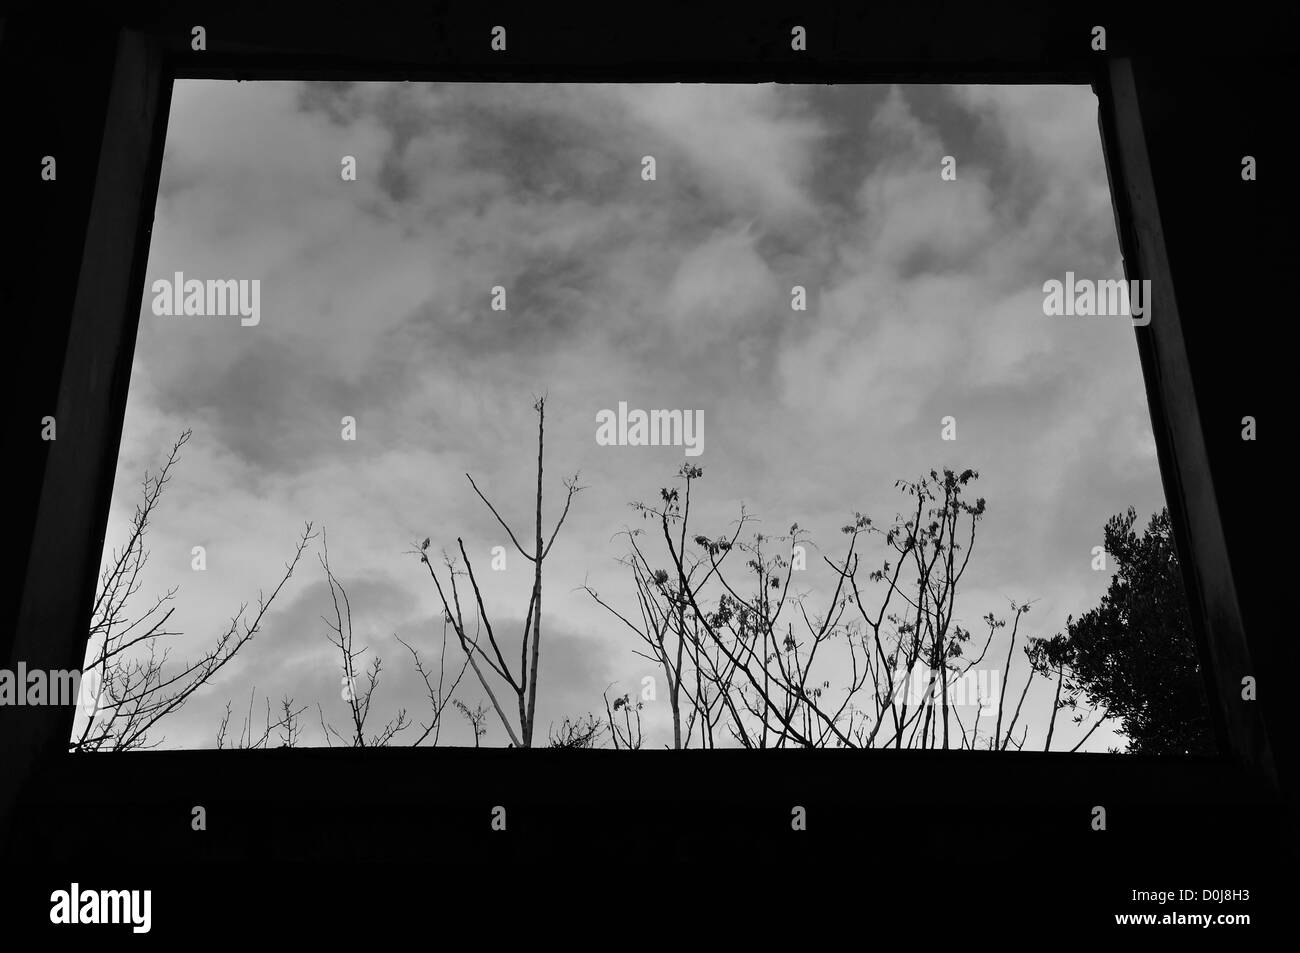 Vue d'arbres et ciel d'hiver dans le cadre de la fenêtre. Noir et blanc. Banque D'Images